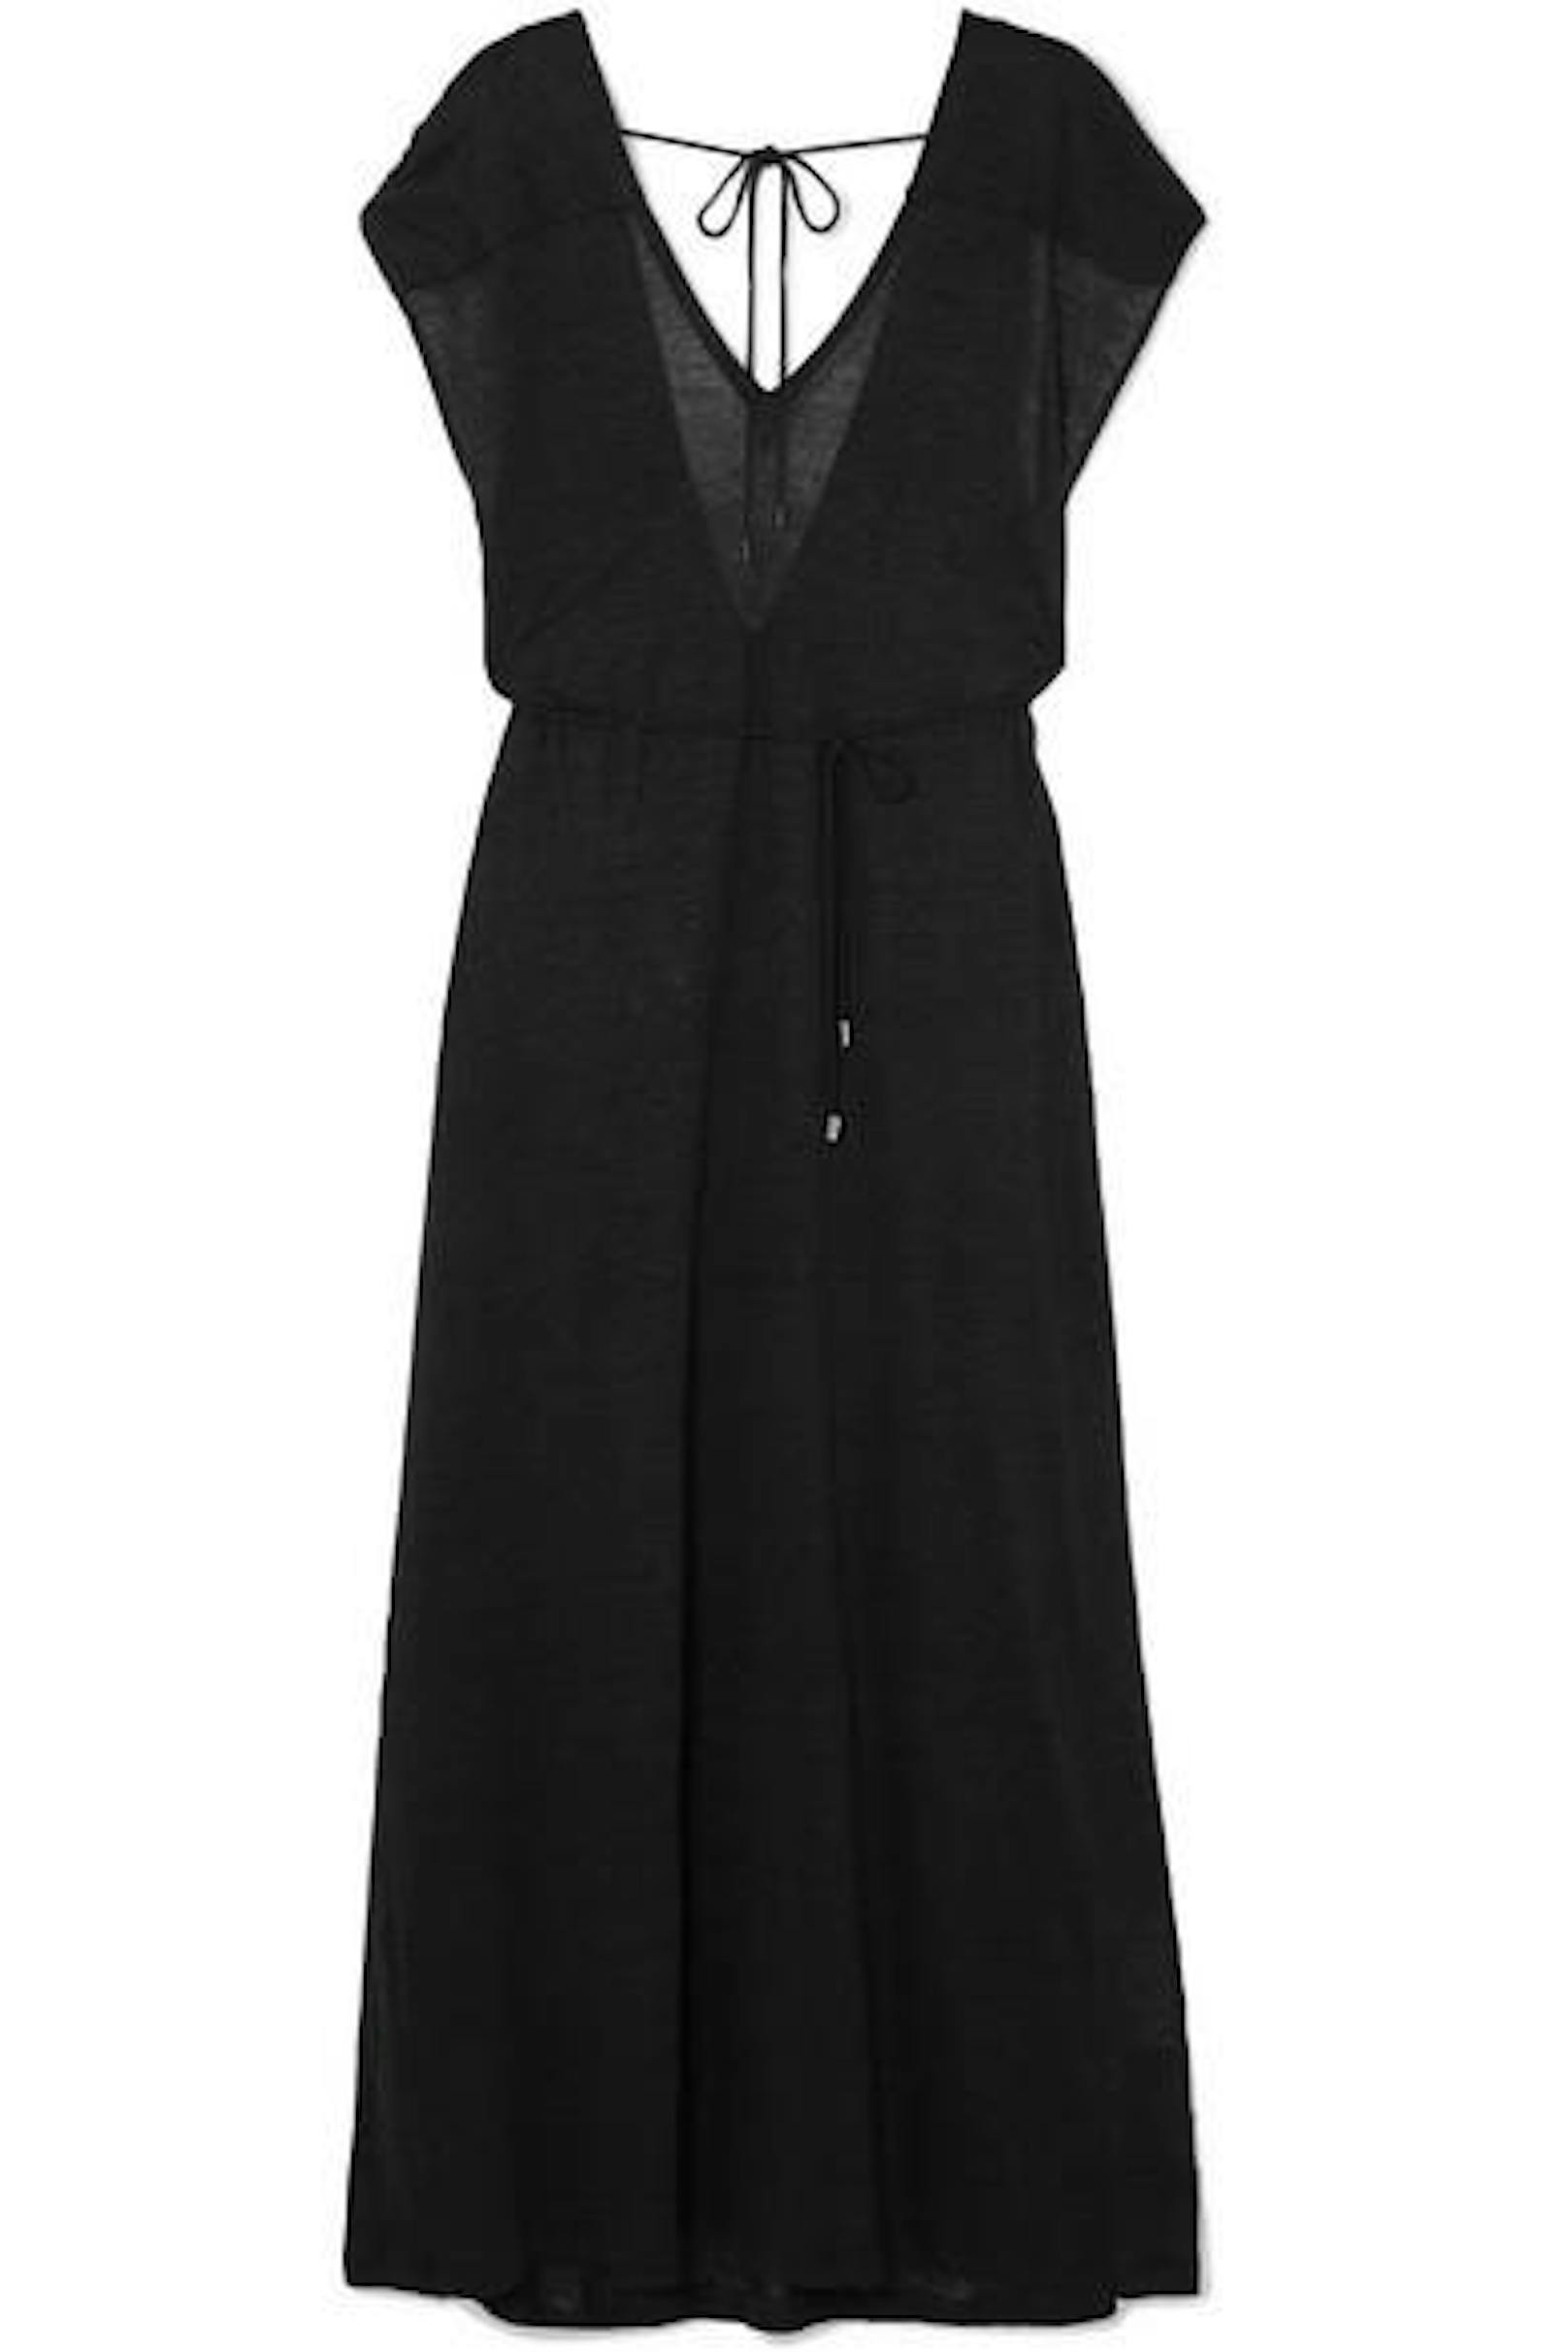 Mit einer kleinen Schleife am Ausschnitt hält dieses kleine Schwarze alles richtig zusammen und versprüht den eleganten Kate-Moss-Look, für den sie in den 90ern so bekannt war. (Foto: Ninety Percent / Net-a-porter)